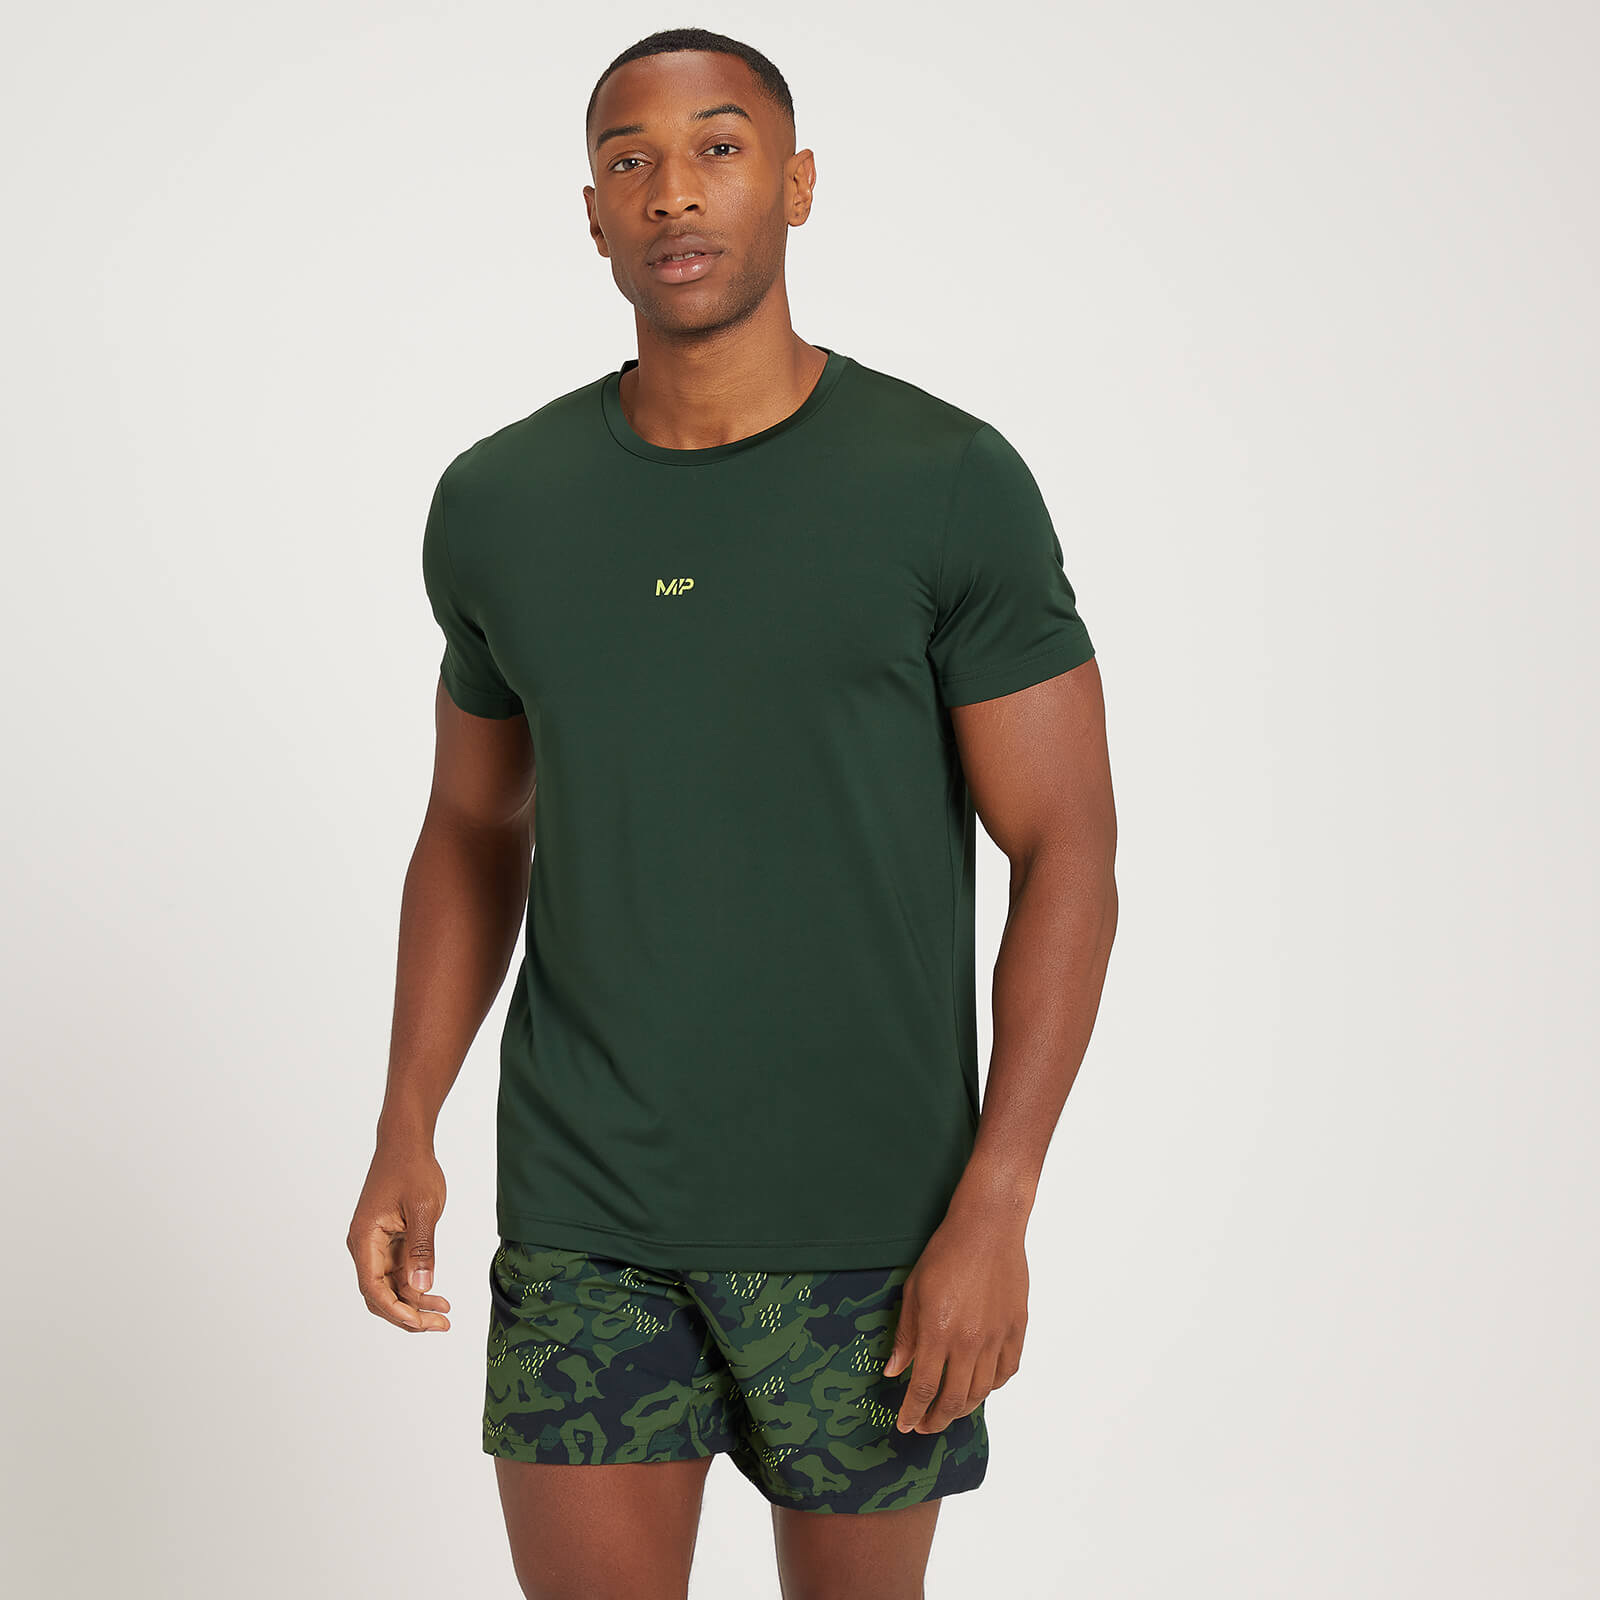 Camiseta de manga corta Adapt con estampado de camuflaje para hombre de MP - Verde oscuro - M